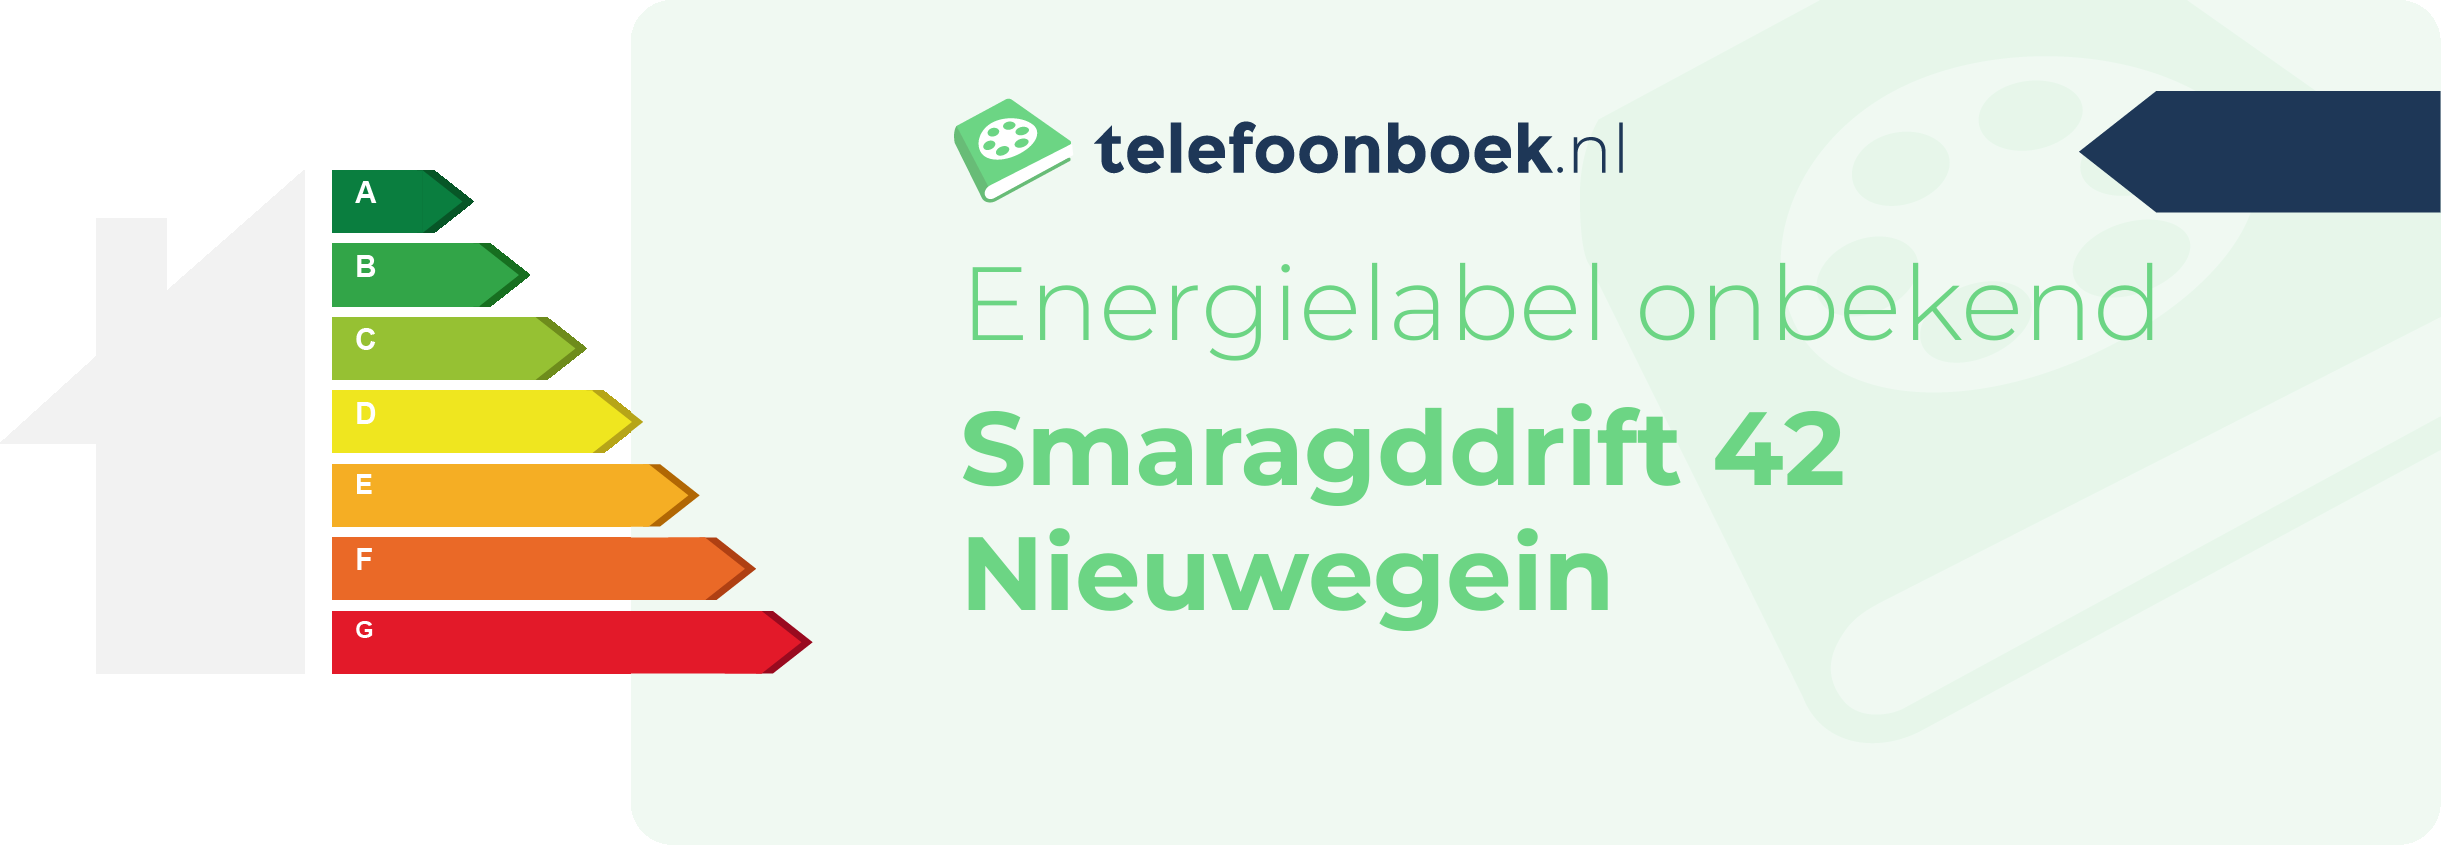 Energielabel Smaragddrift 42 Nieuwegein